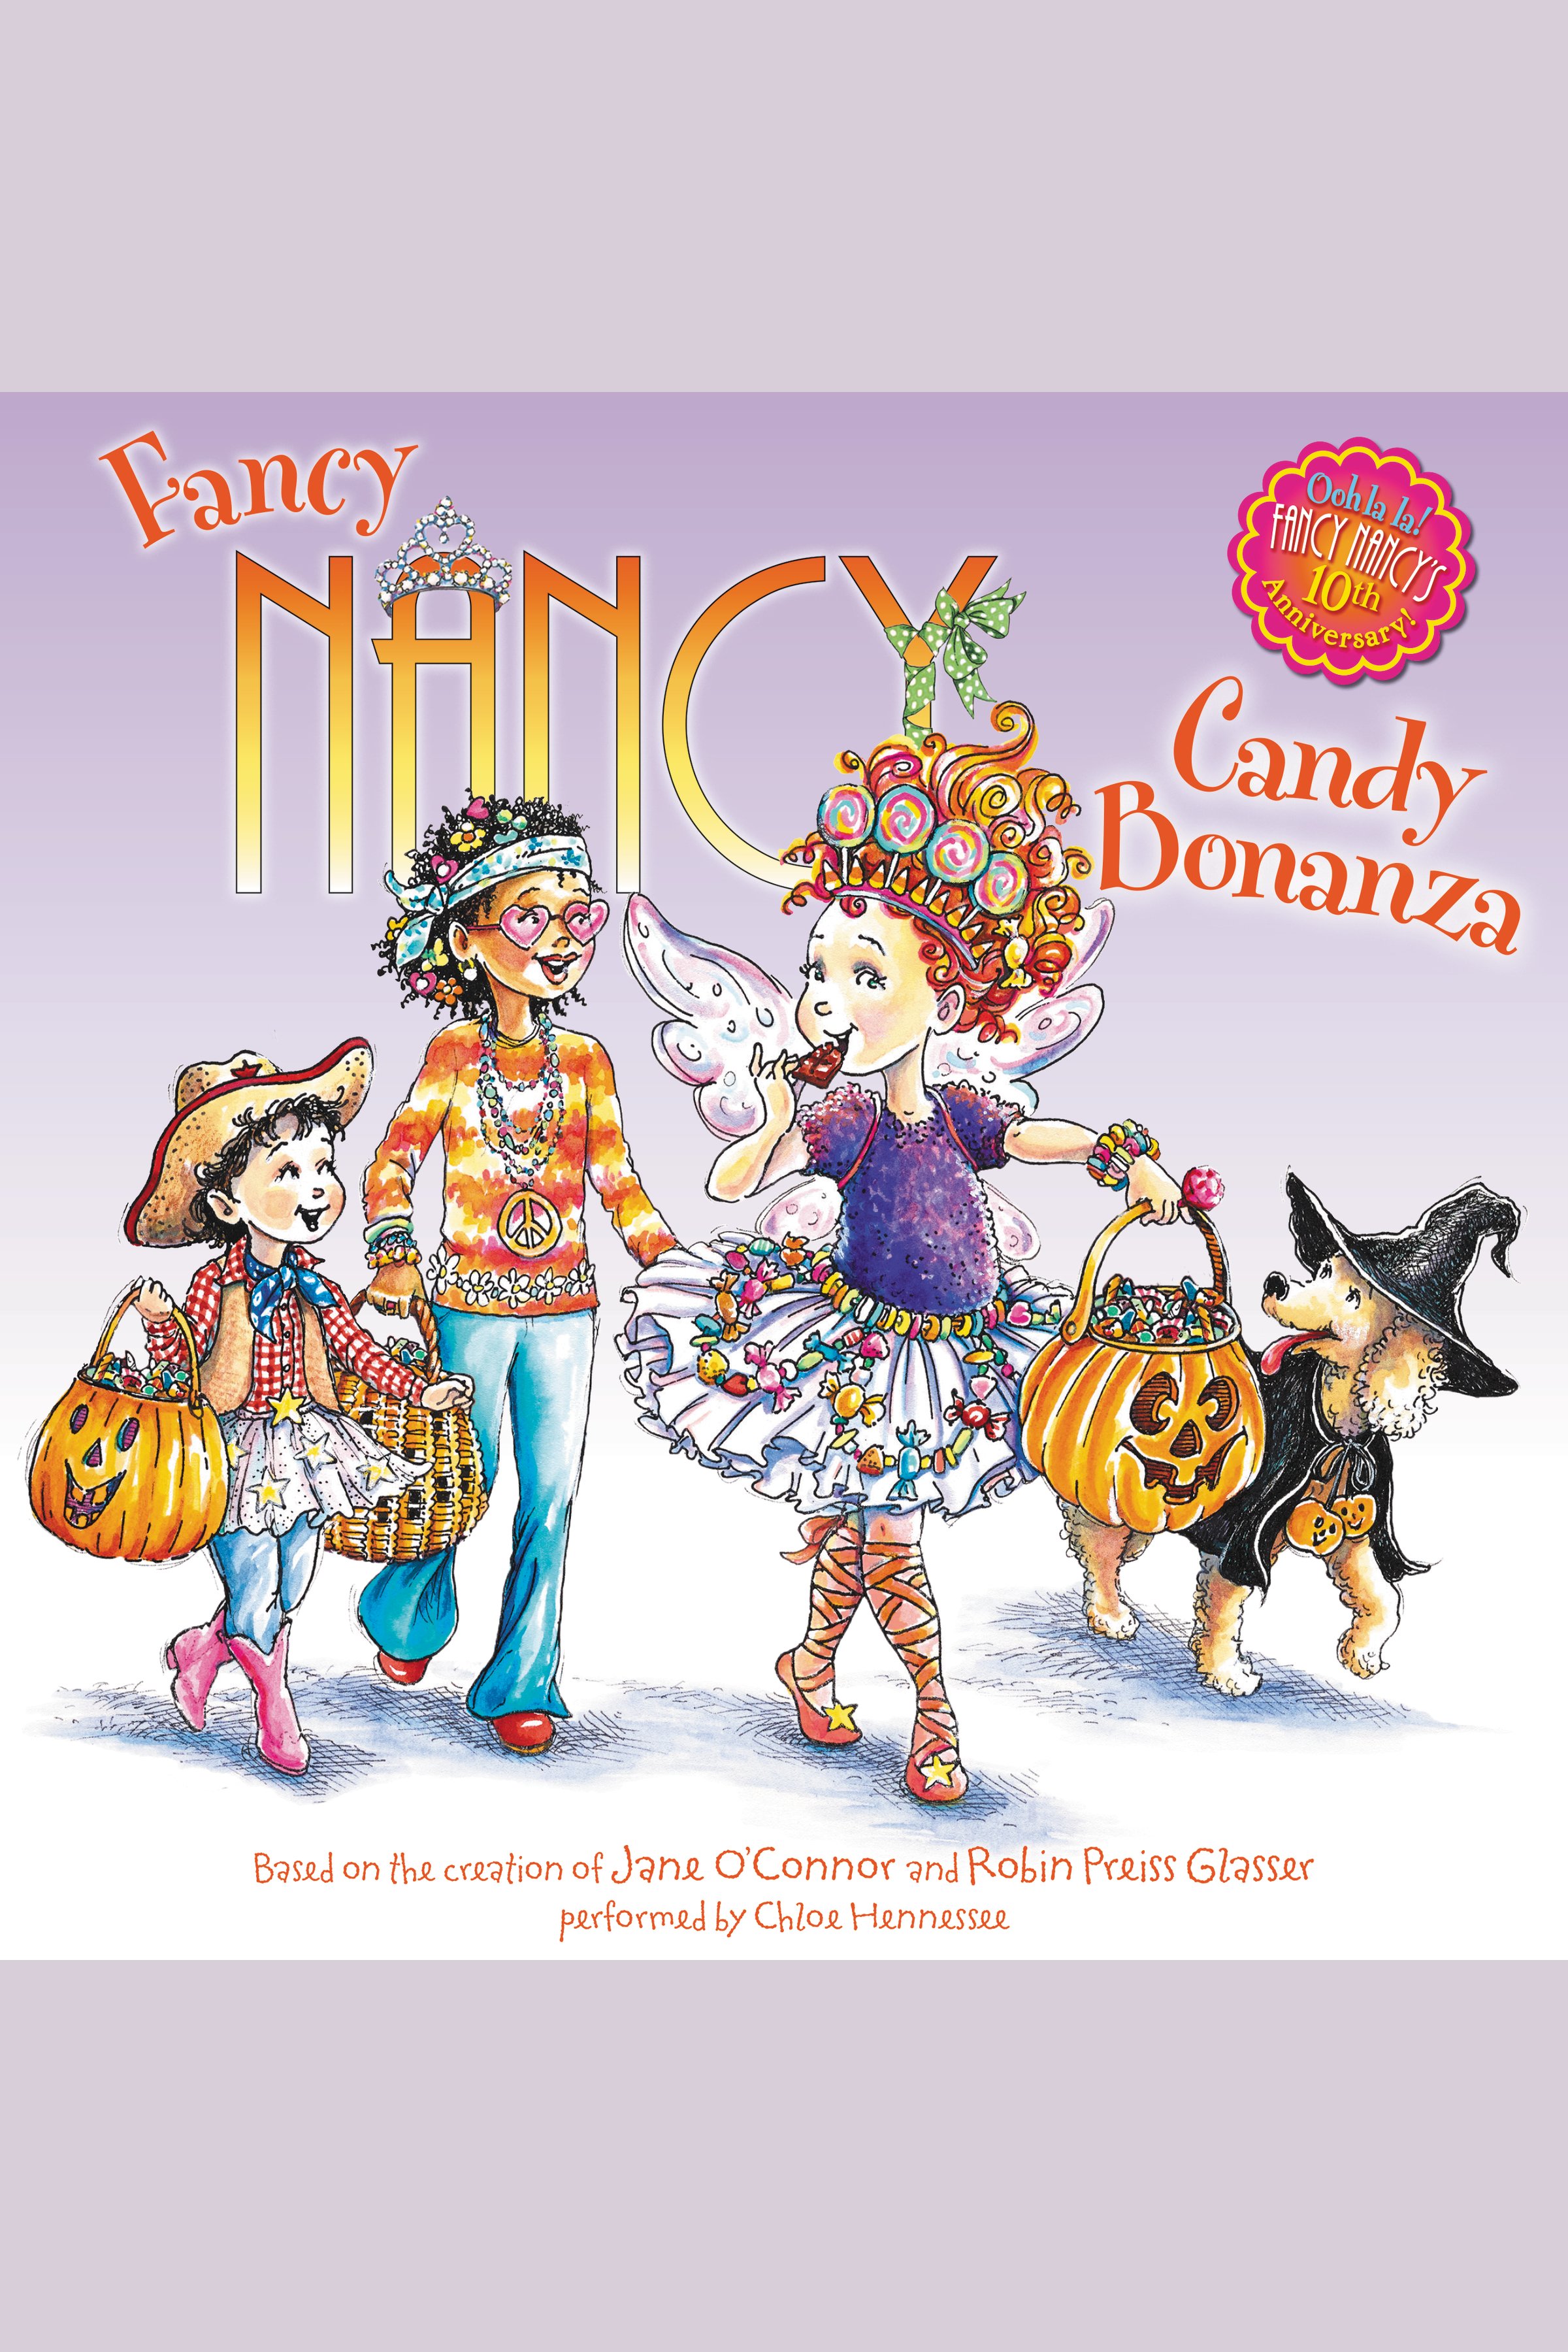 Candy bonanza cover image